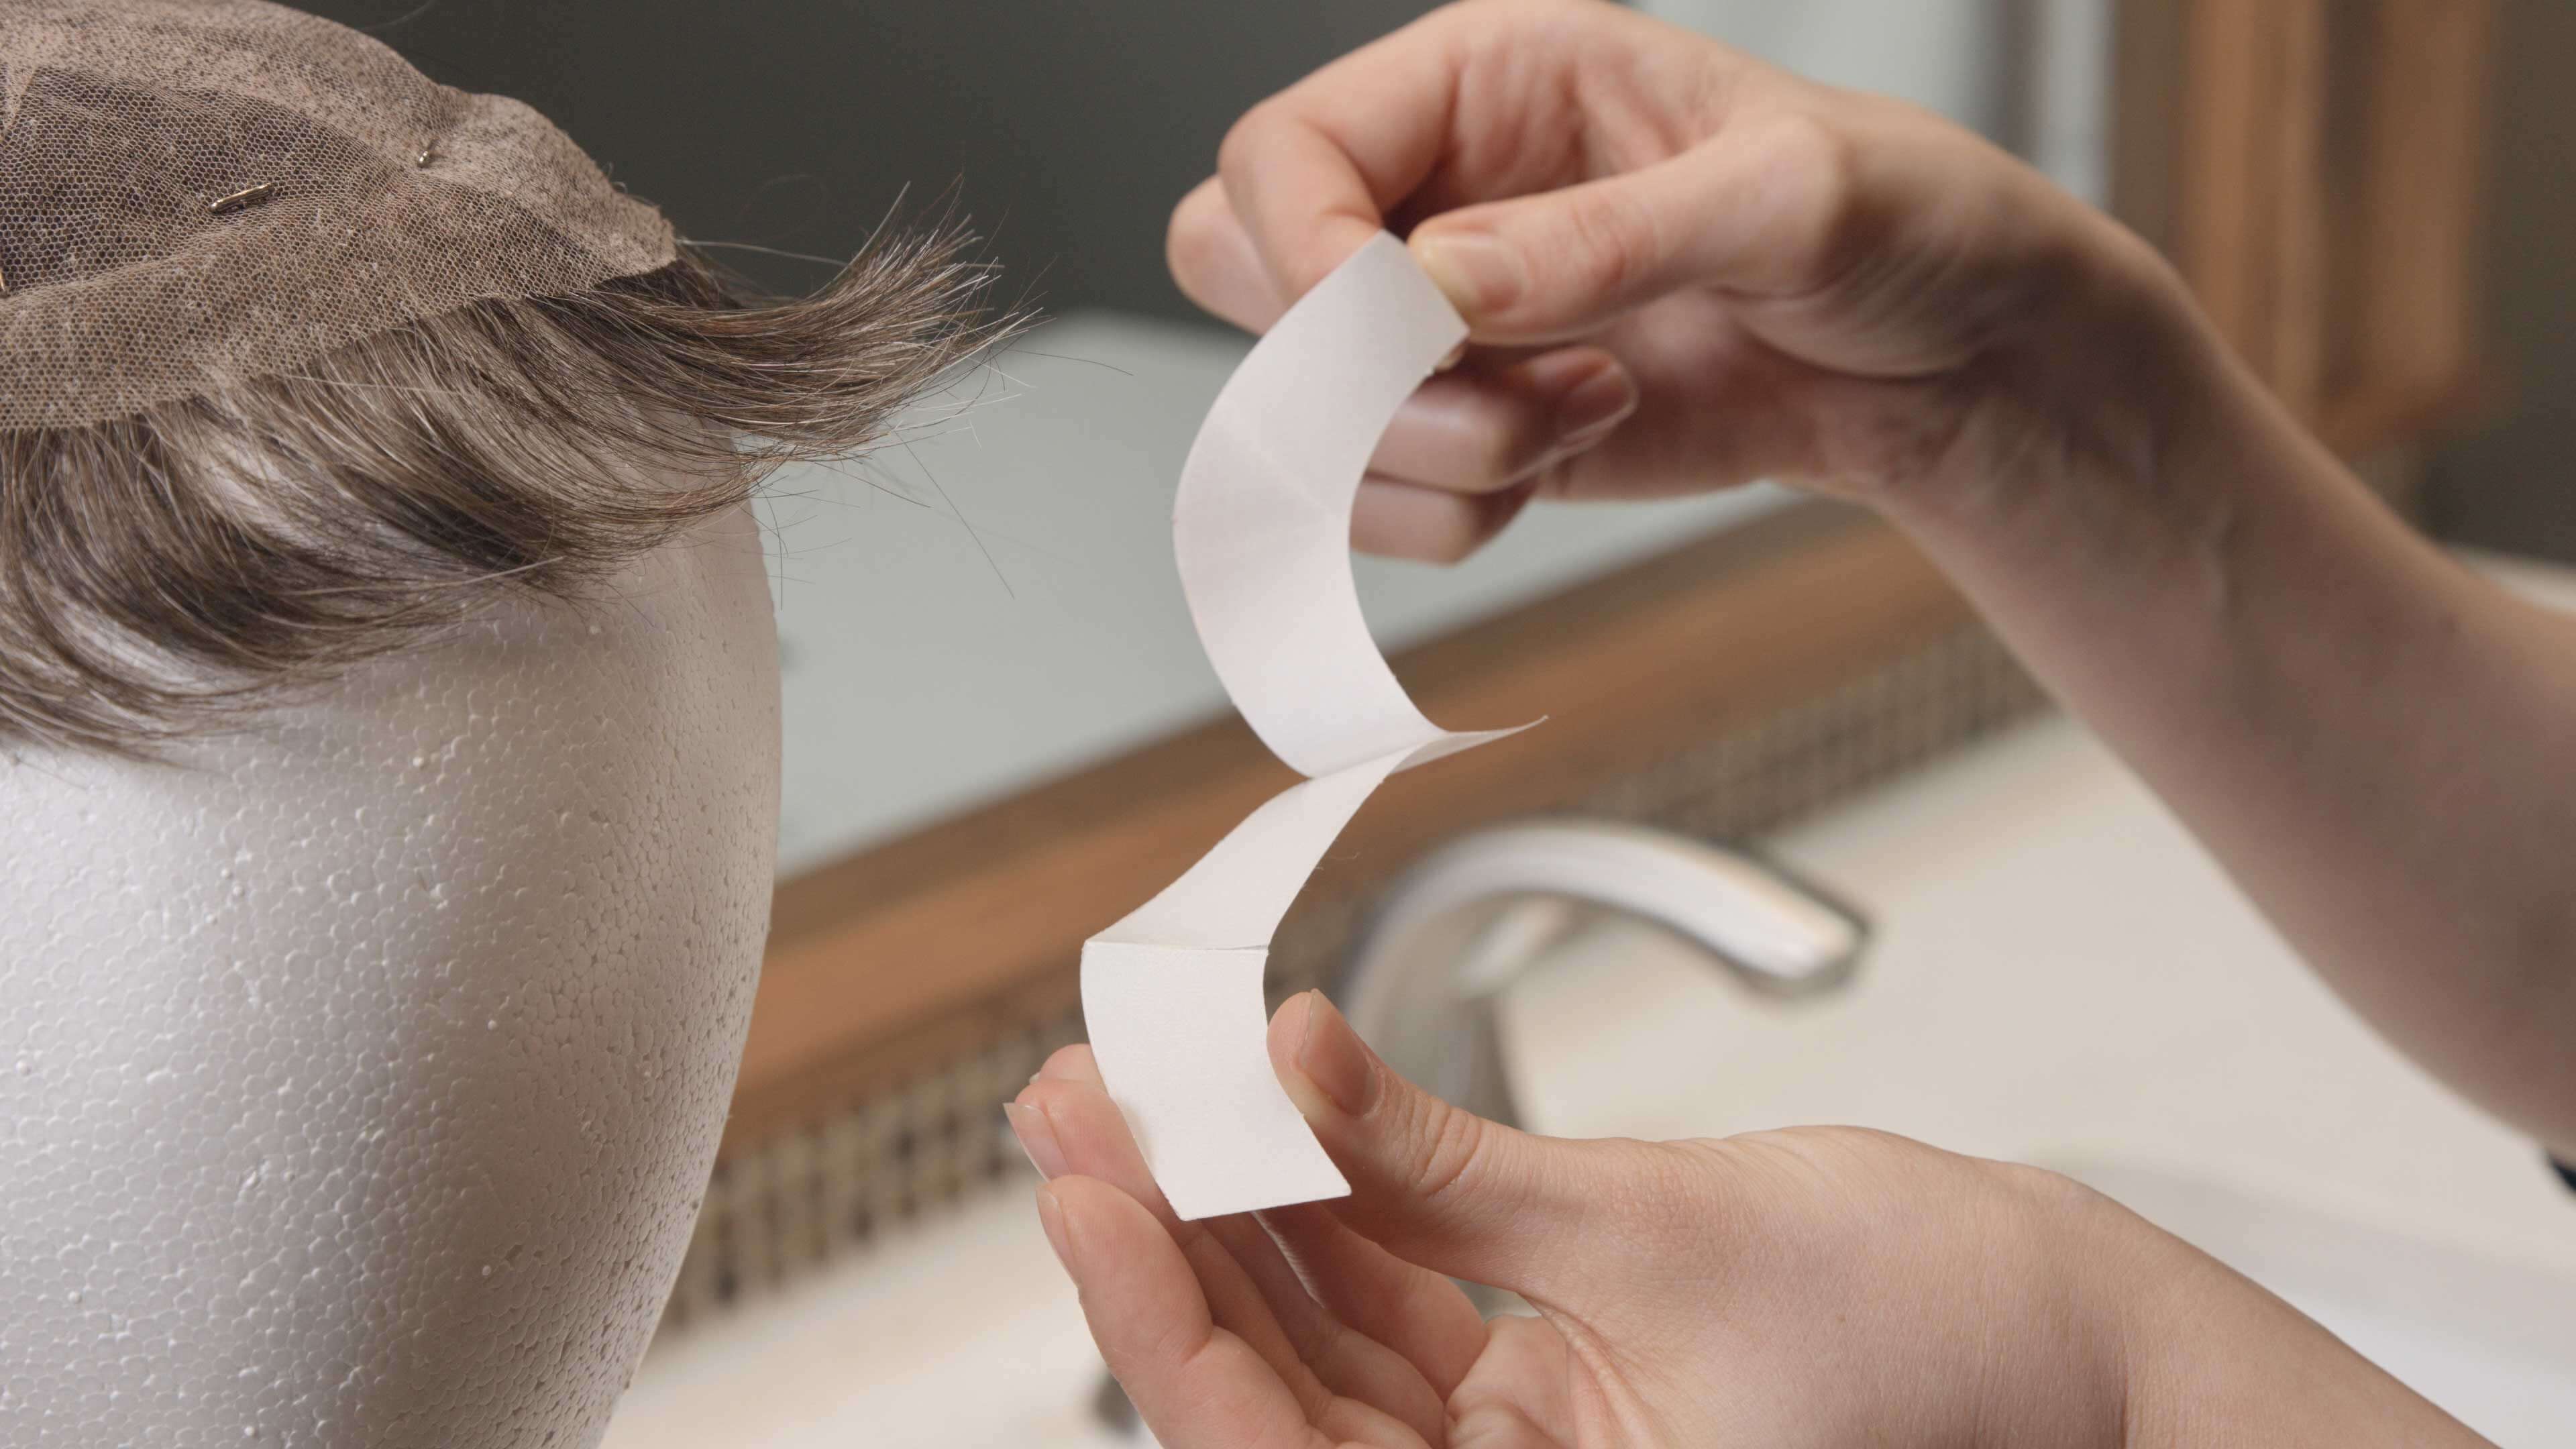 Protez Saç Uygulaması 2. Adım | Protez Saç Nasıl Bantlanır?